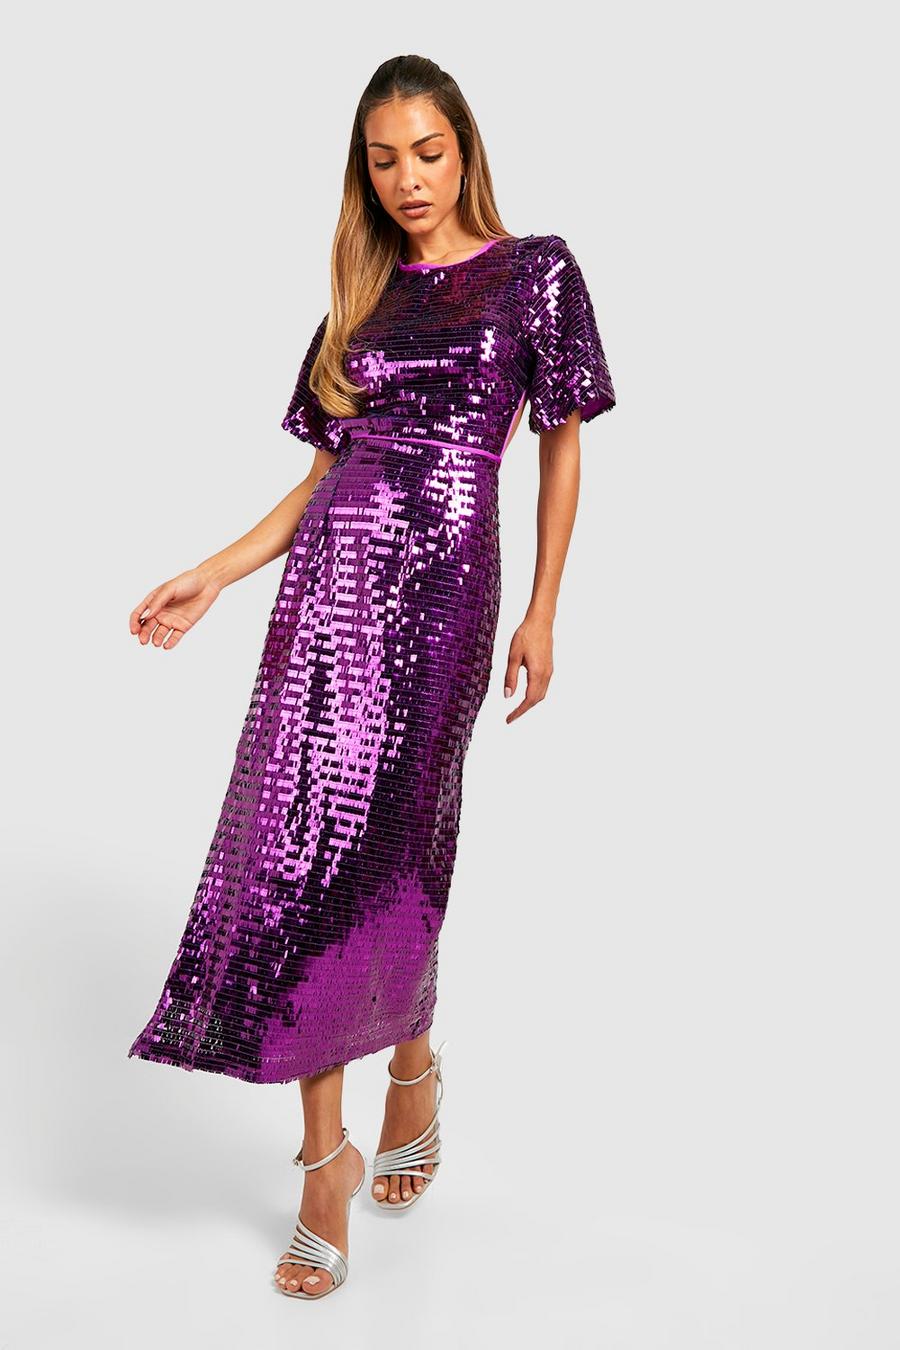 Vestito midi da party con paillettes, maniche ad angelo e cut-out, Jewel purple